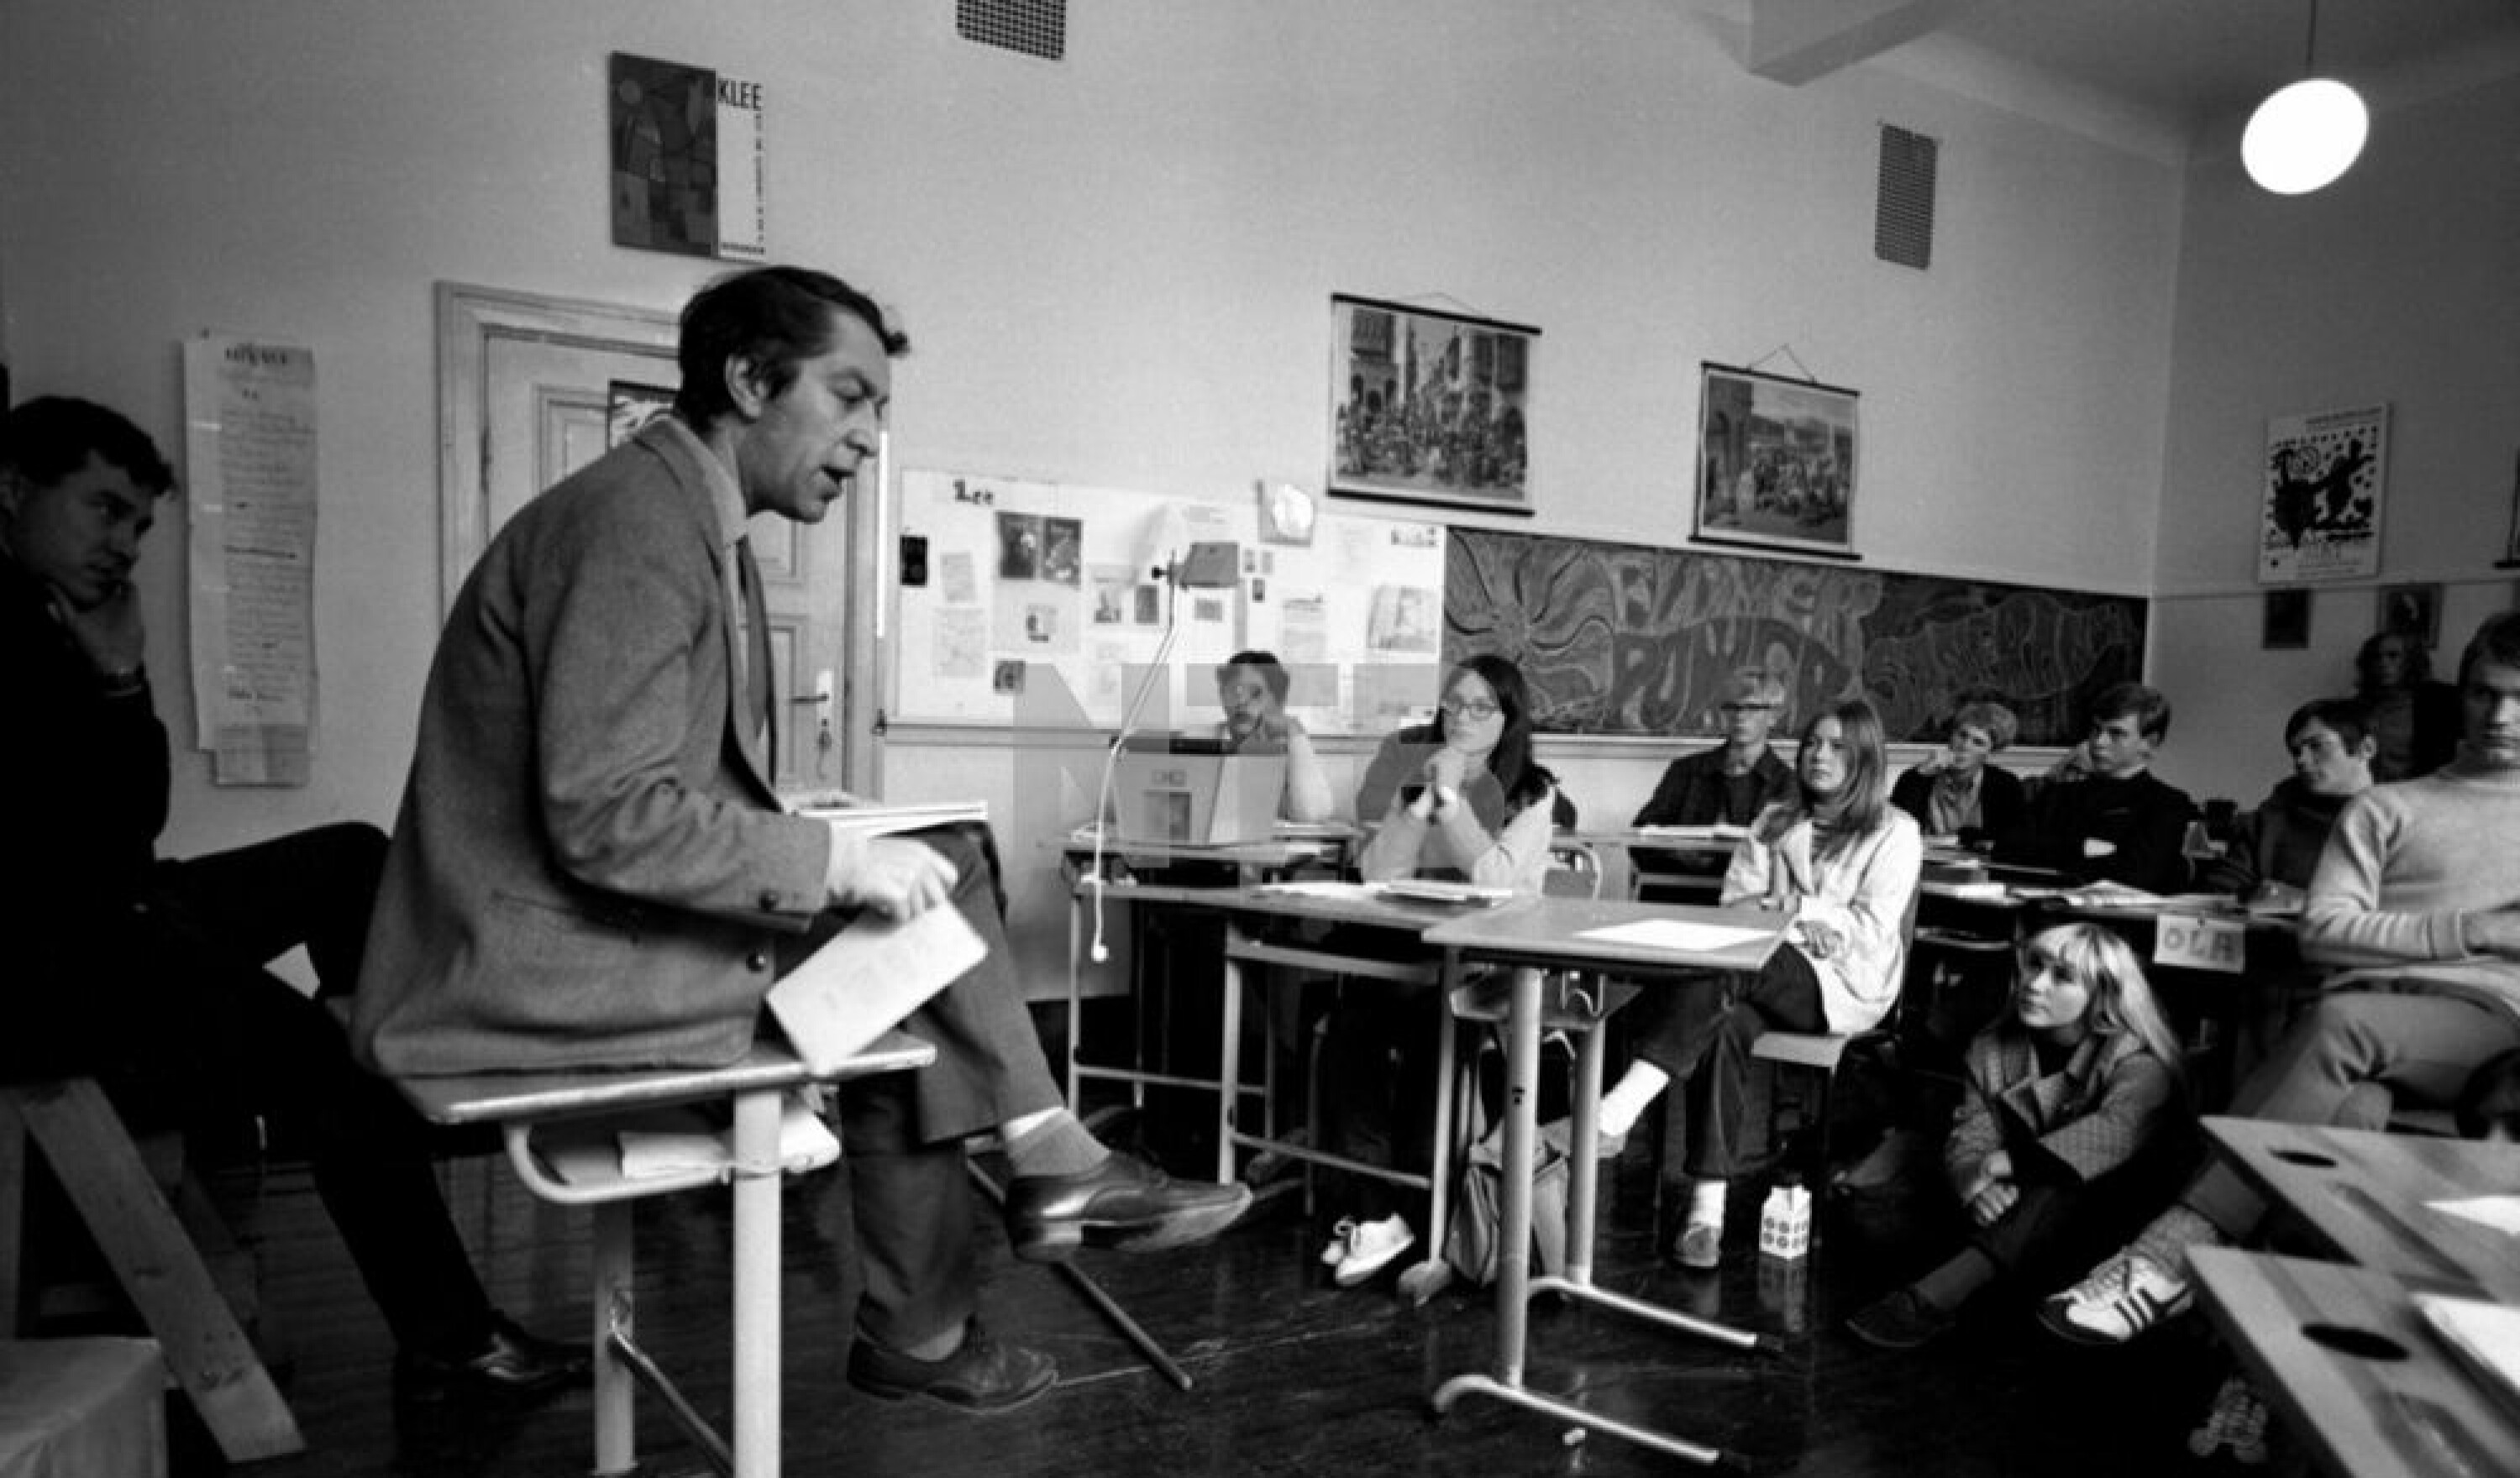 Georg Johannesen les dikt for elevar ved Forsøksgymnaset i Oslo hausten 1967. På denne tida hadde han erklært seg ferdig som skjønnlitterær forfattar, sjølv om han fekk strålande meldingar for bøkene sine. I bakgrunnen lærar og seinare kjent NRK-journalist Erling Lægreid.